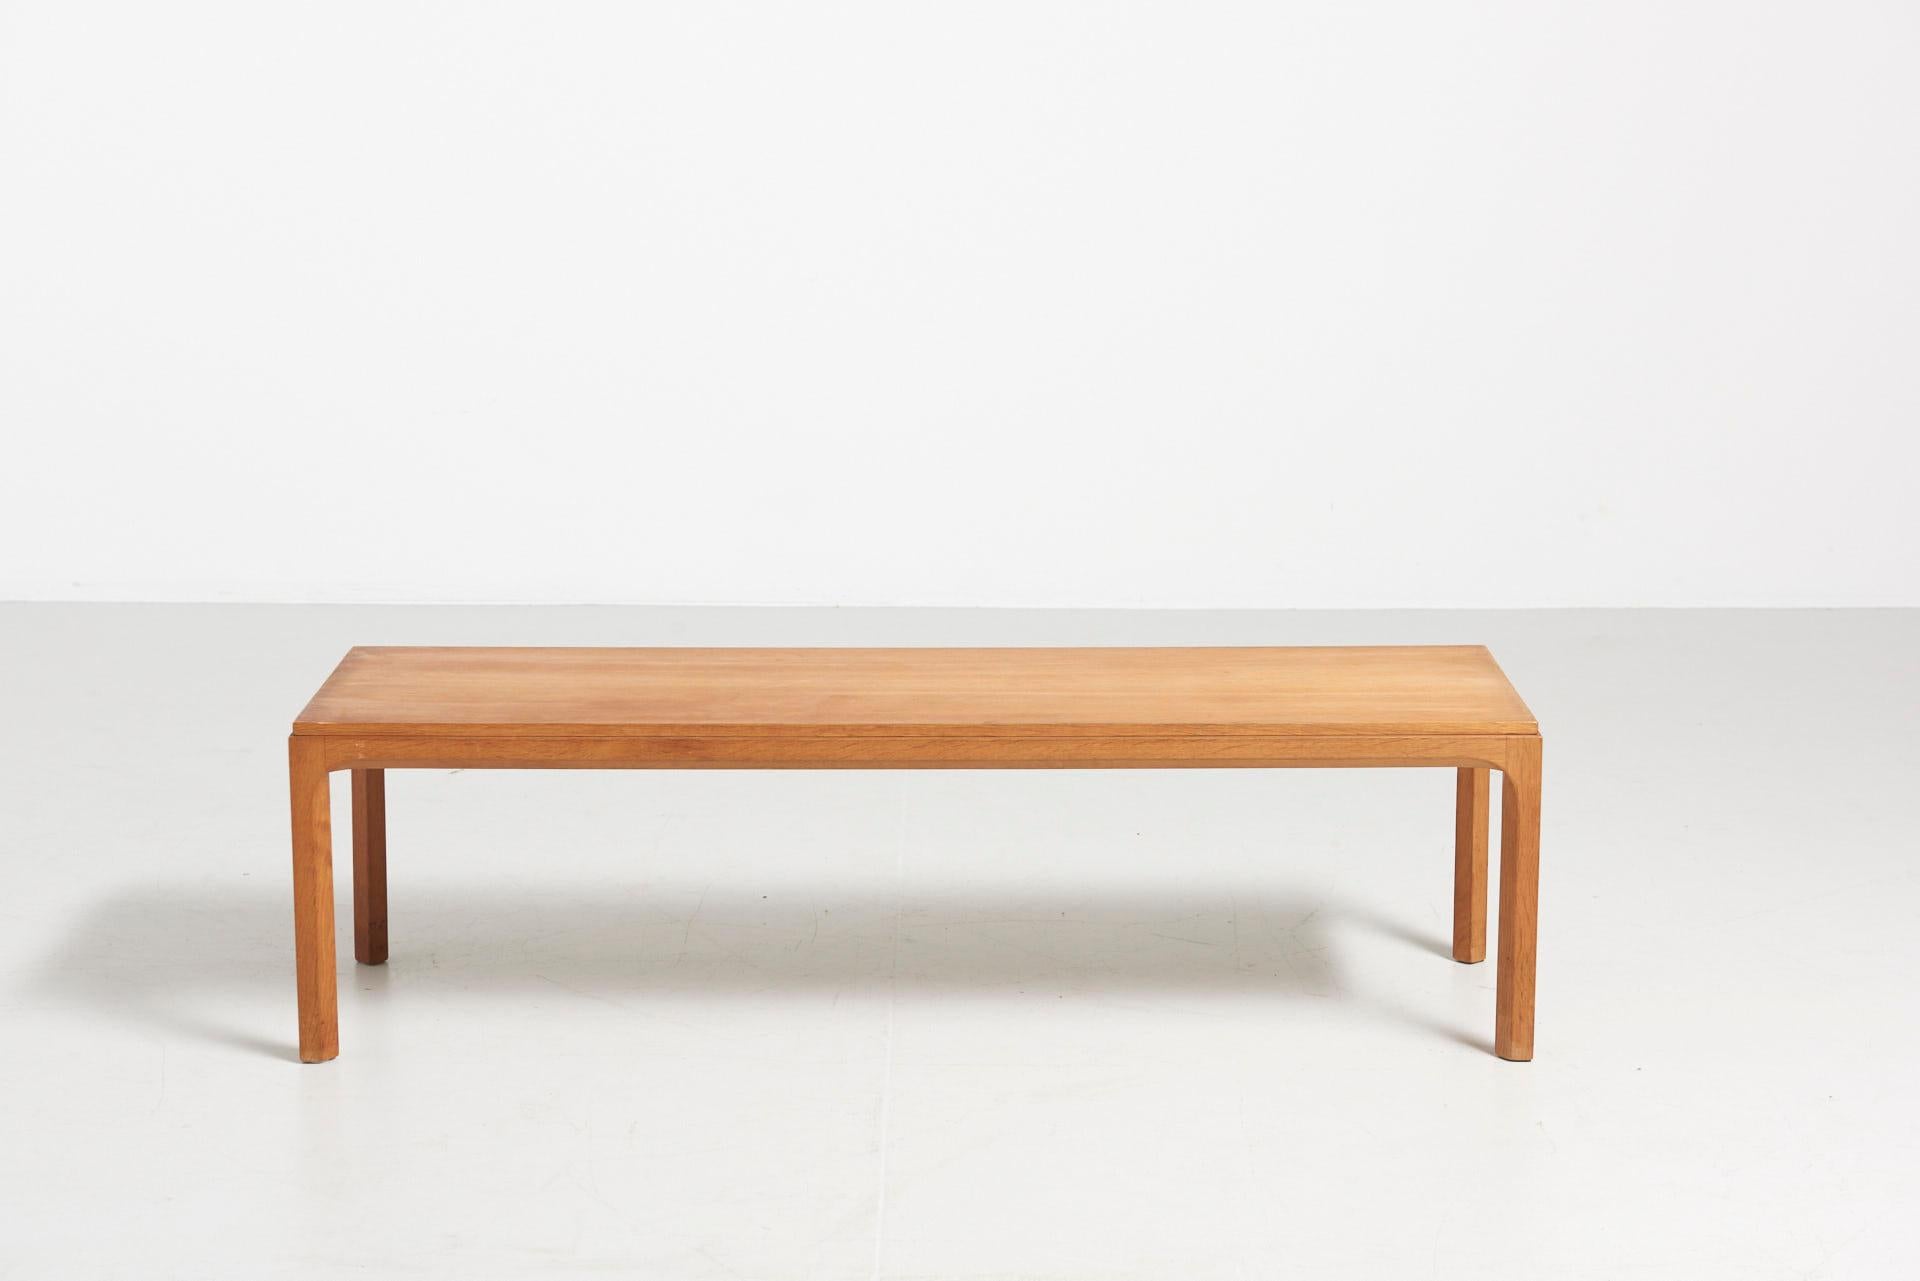 A low table in oak, model nr. 391. Design by Kai Kristiansen, for Aksel Kjersgaard. Made in Denmark.

 